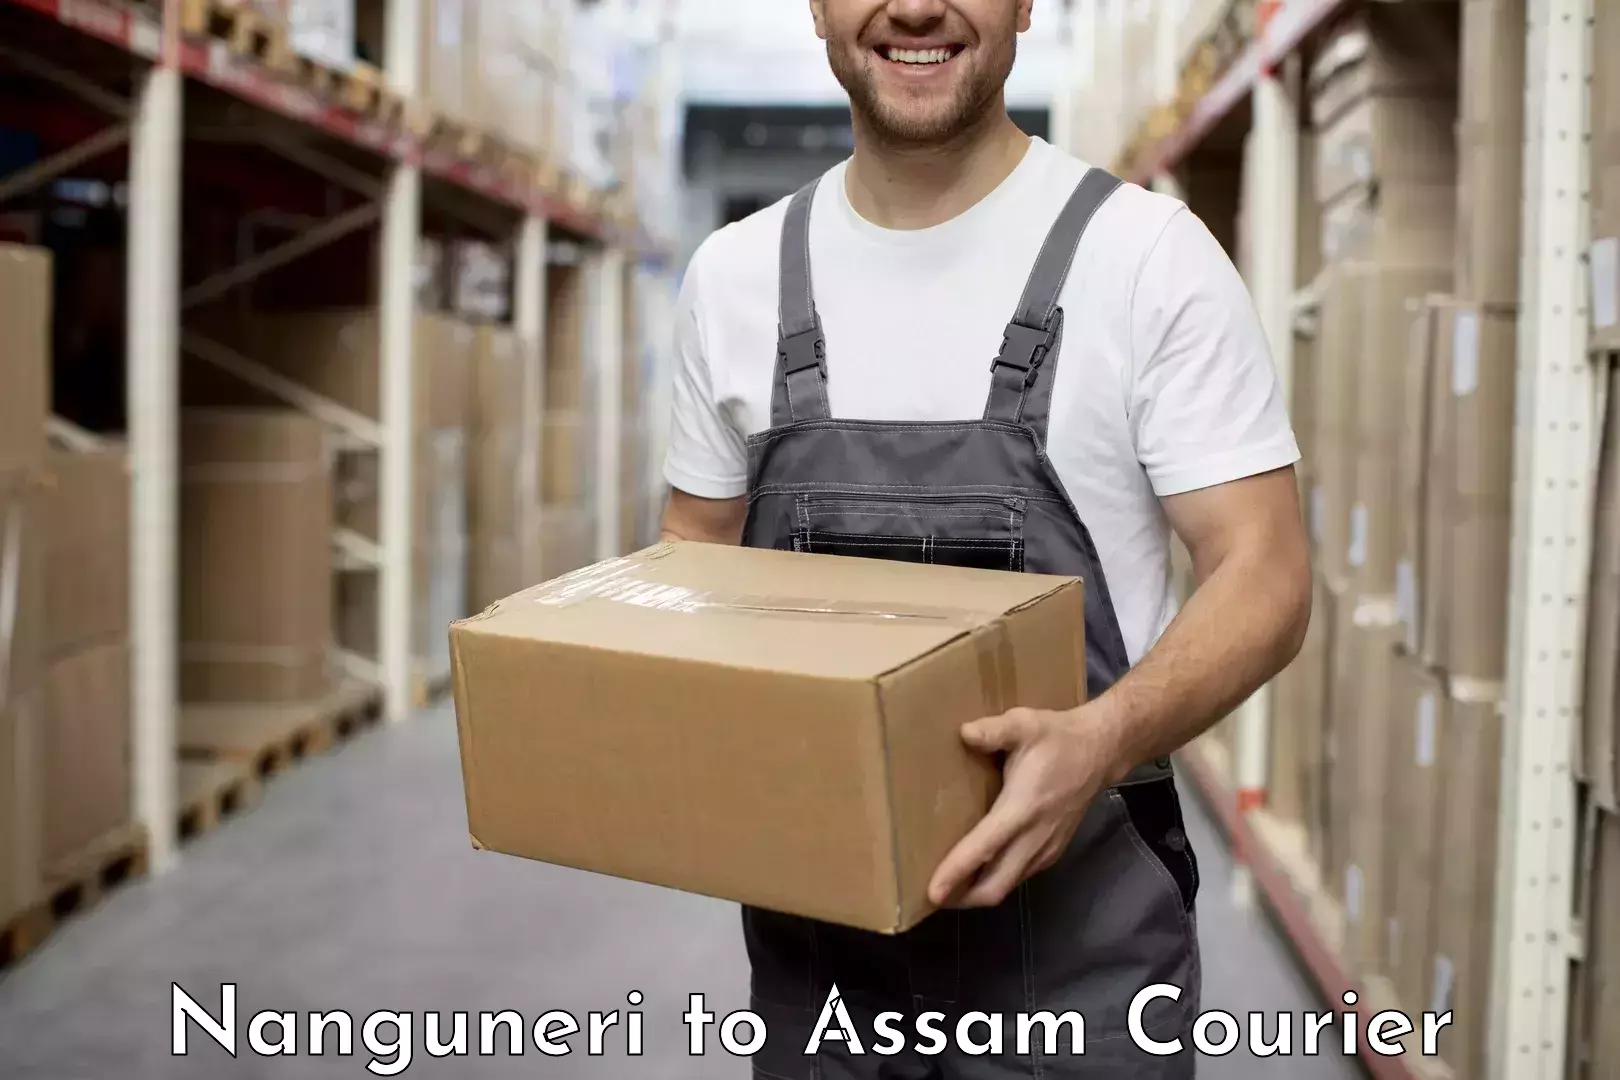 High-priority parcel service Nanguneri to Assam